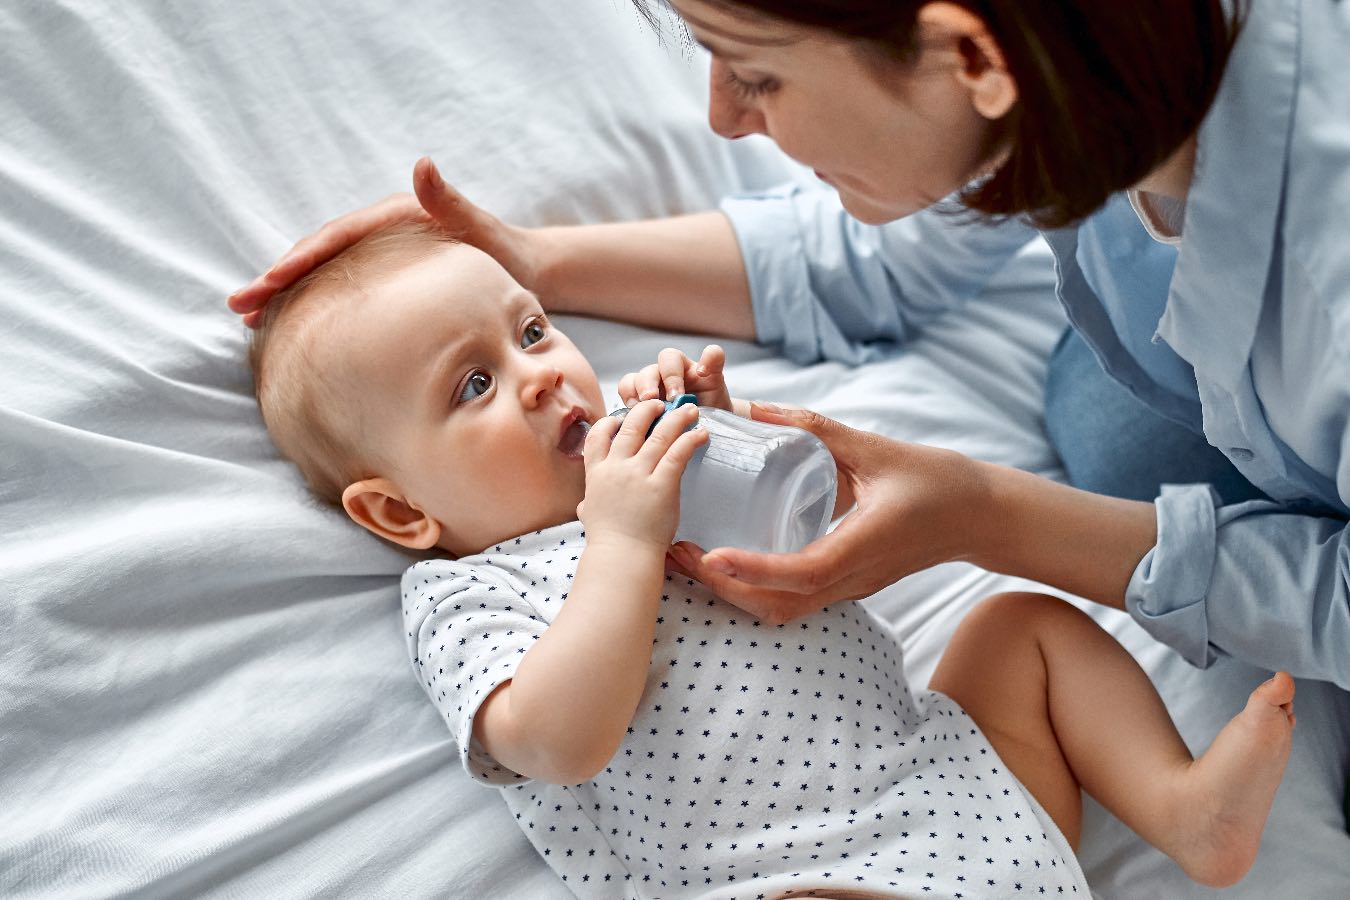 Sine usta u dziecka – jakie są przyczyny? Nie lekceważ tego objawu, może świadczyć o poważnej chorobie